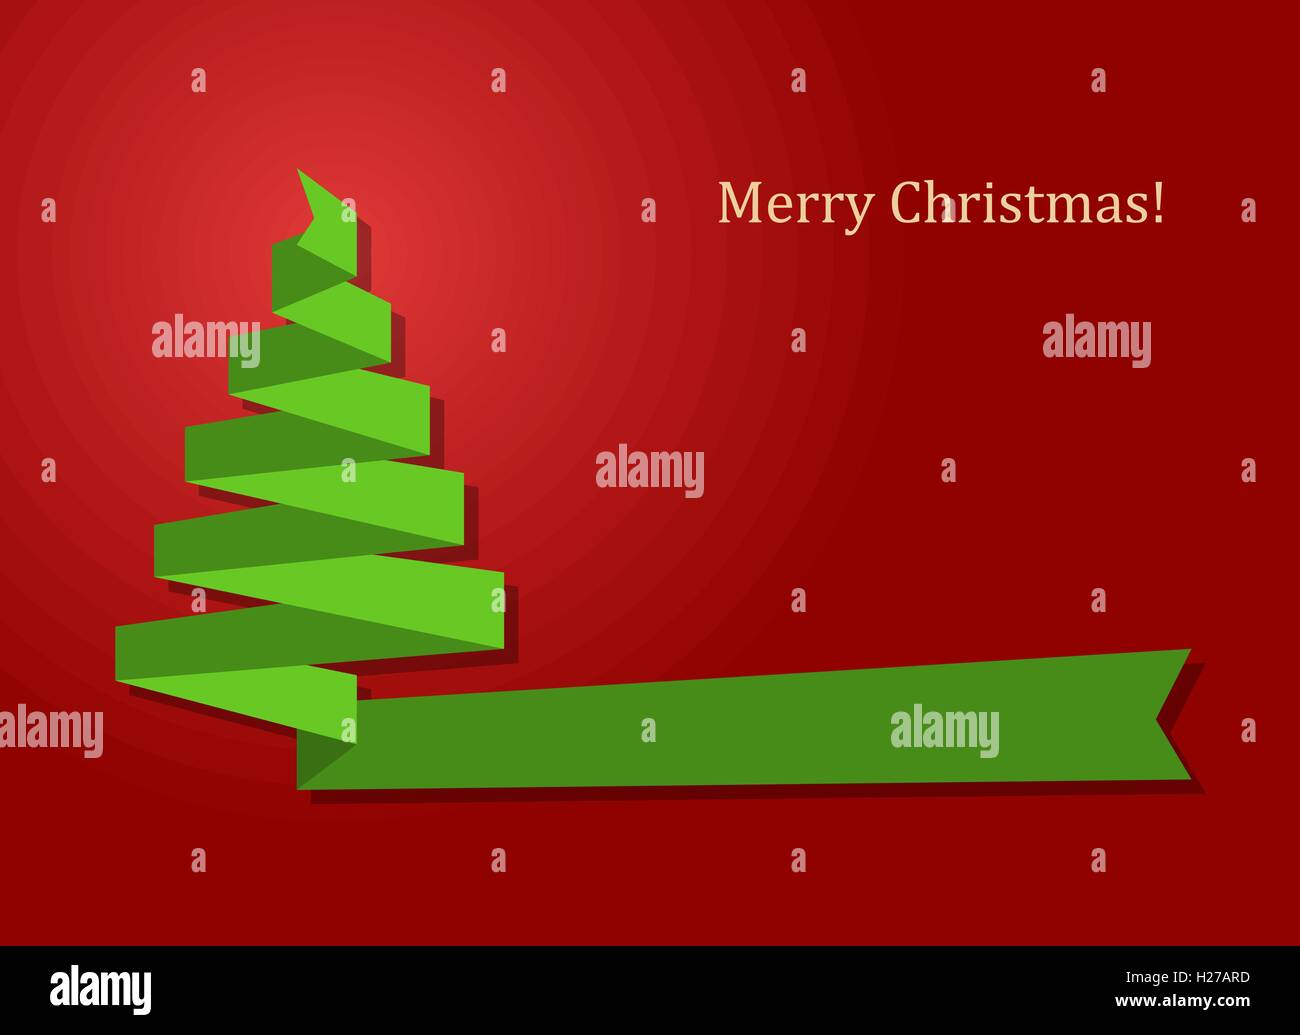 Frohe Weihnachten Karte mit Grünband als Weihnachtsbaum auf rotem Hintergrund-Vektor-illustration Stock Vektor